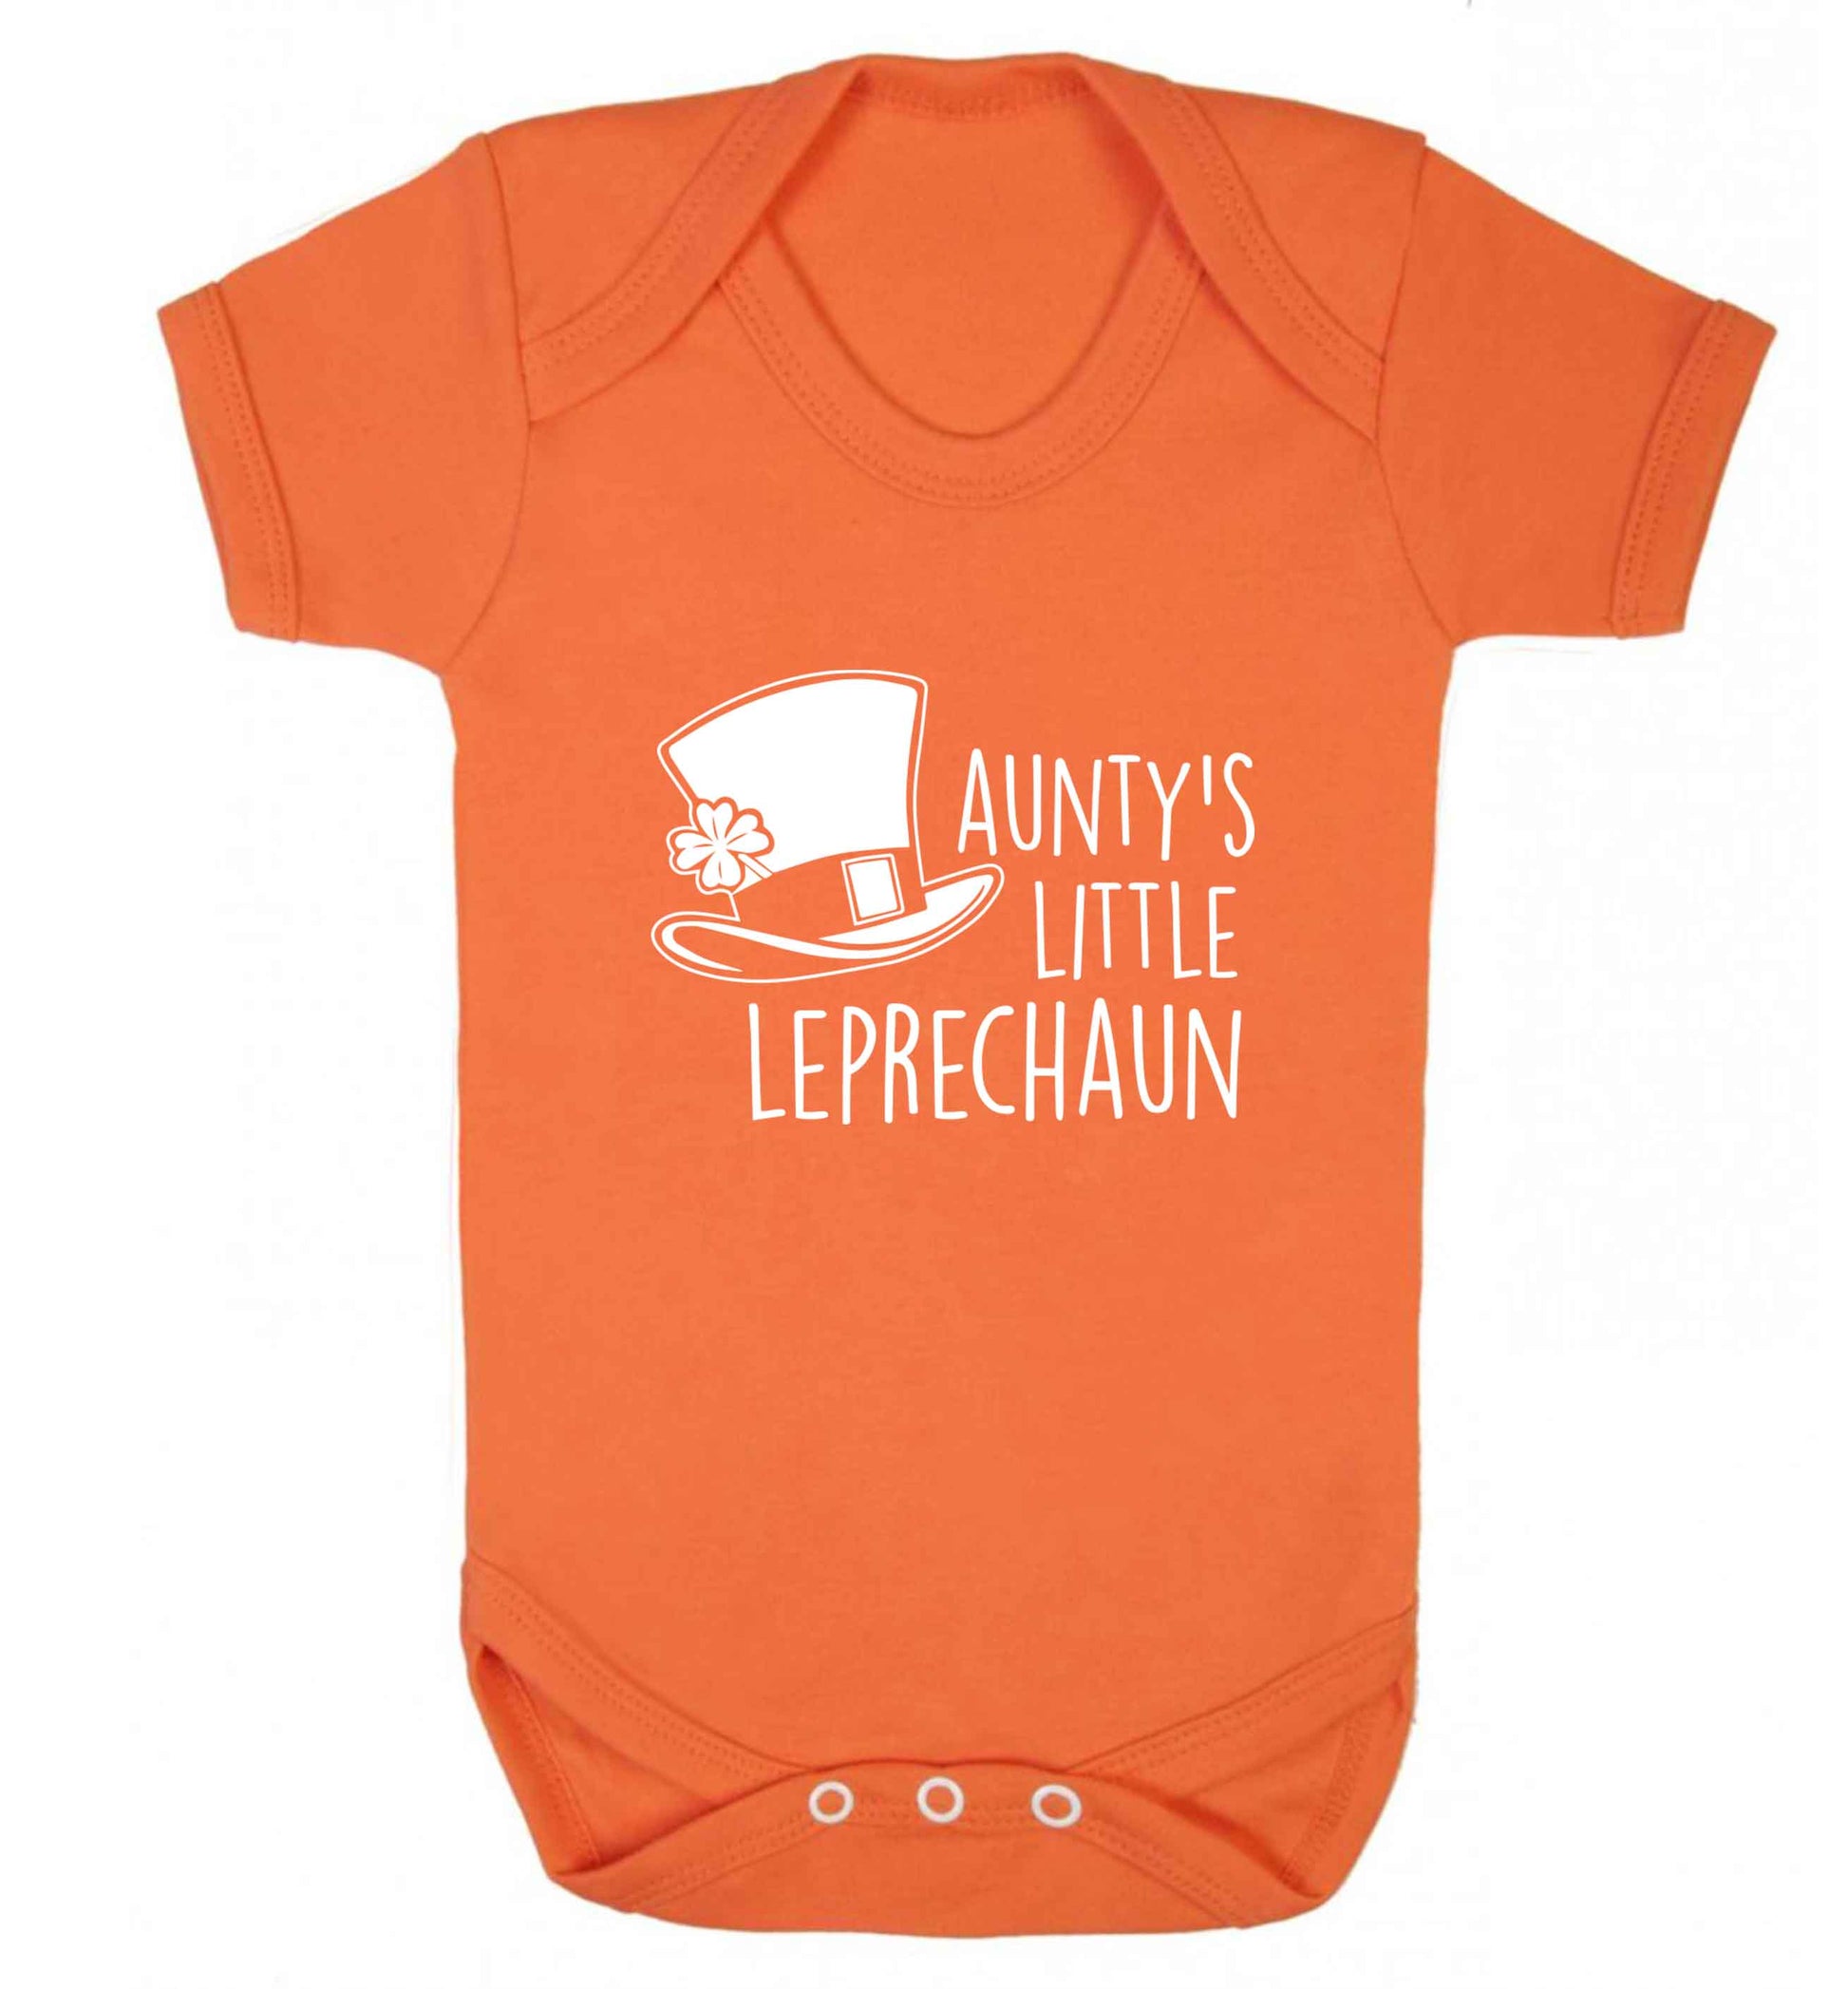 Aunty's little leprechaun baby vest orange 18-24 months